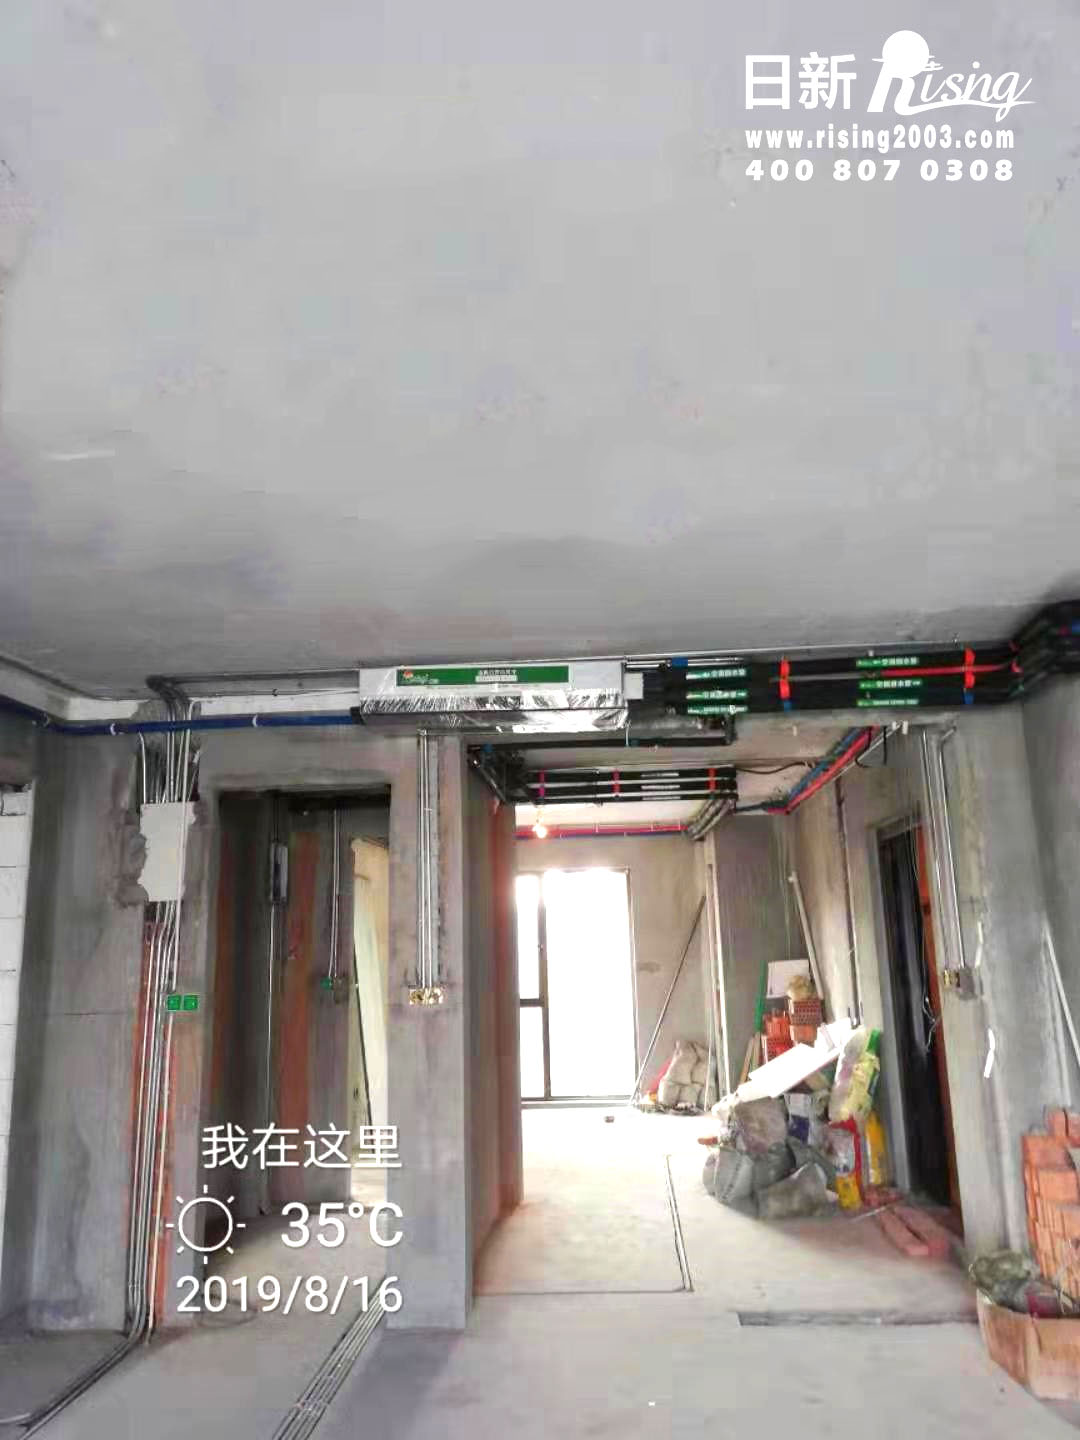 中海御道路一号风冷热泵系统空调阶段